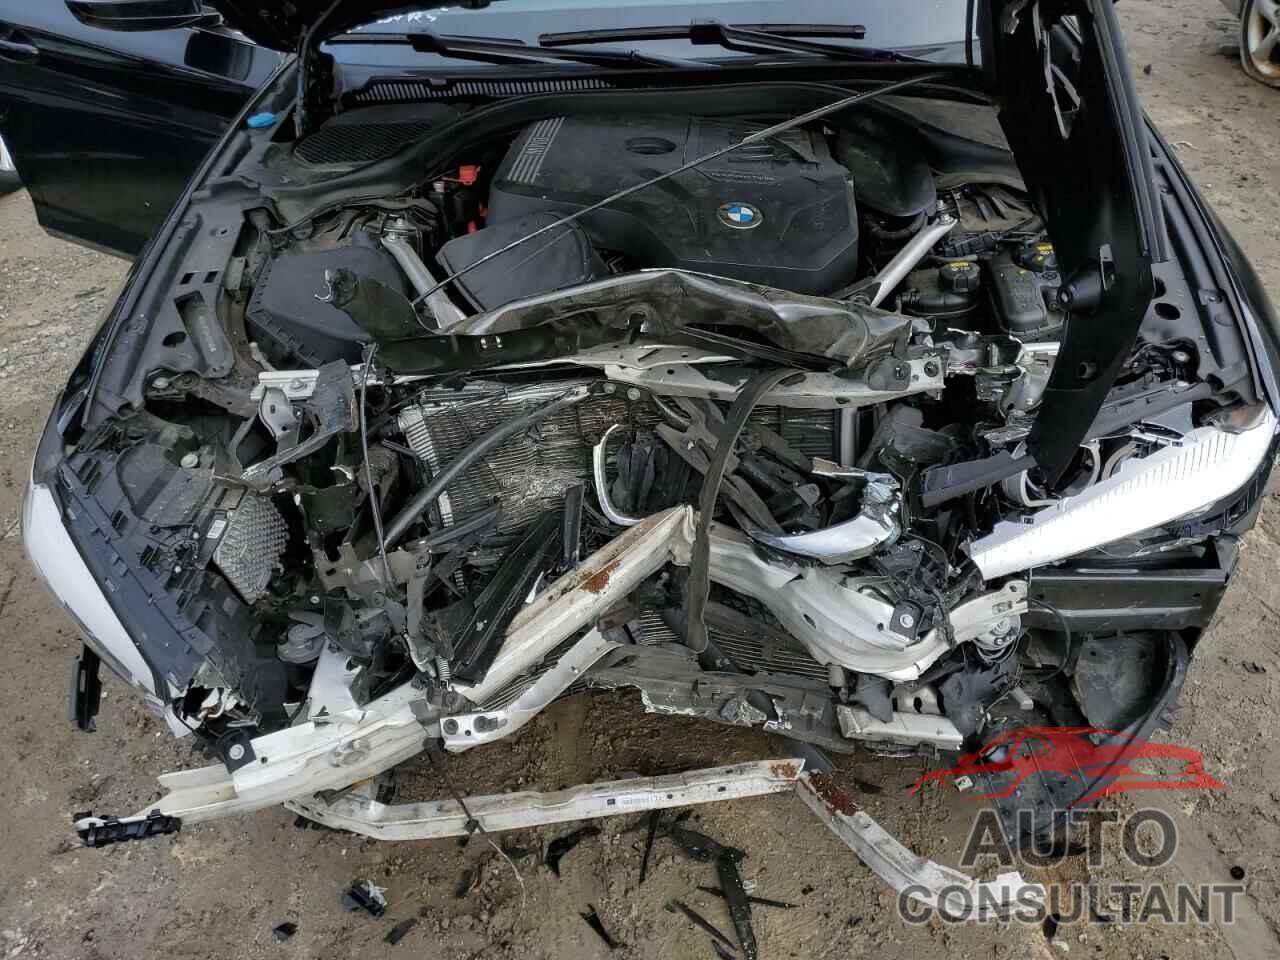 BMW 5 SERIES 2020 - WBAJR7C04LCD12095